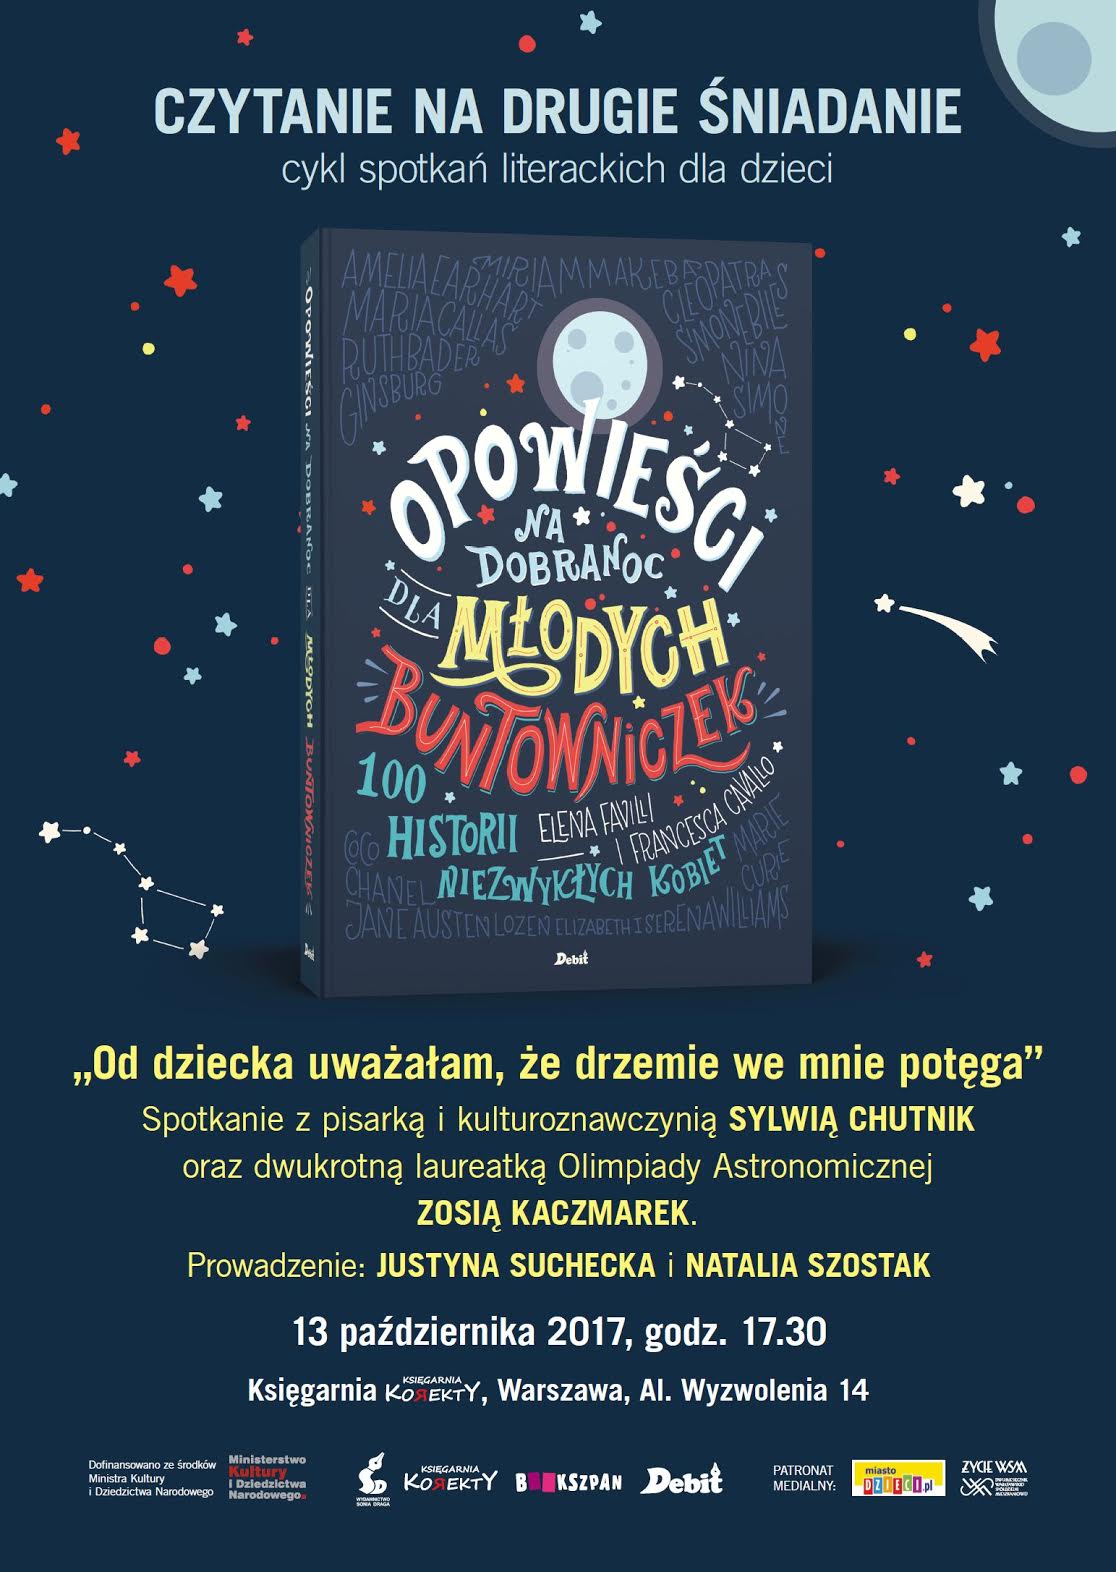 Debaty na temat książek w Warszawie